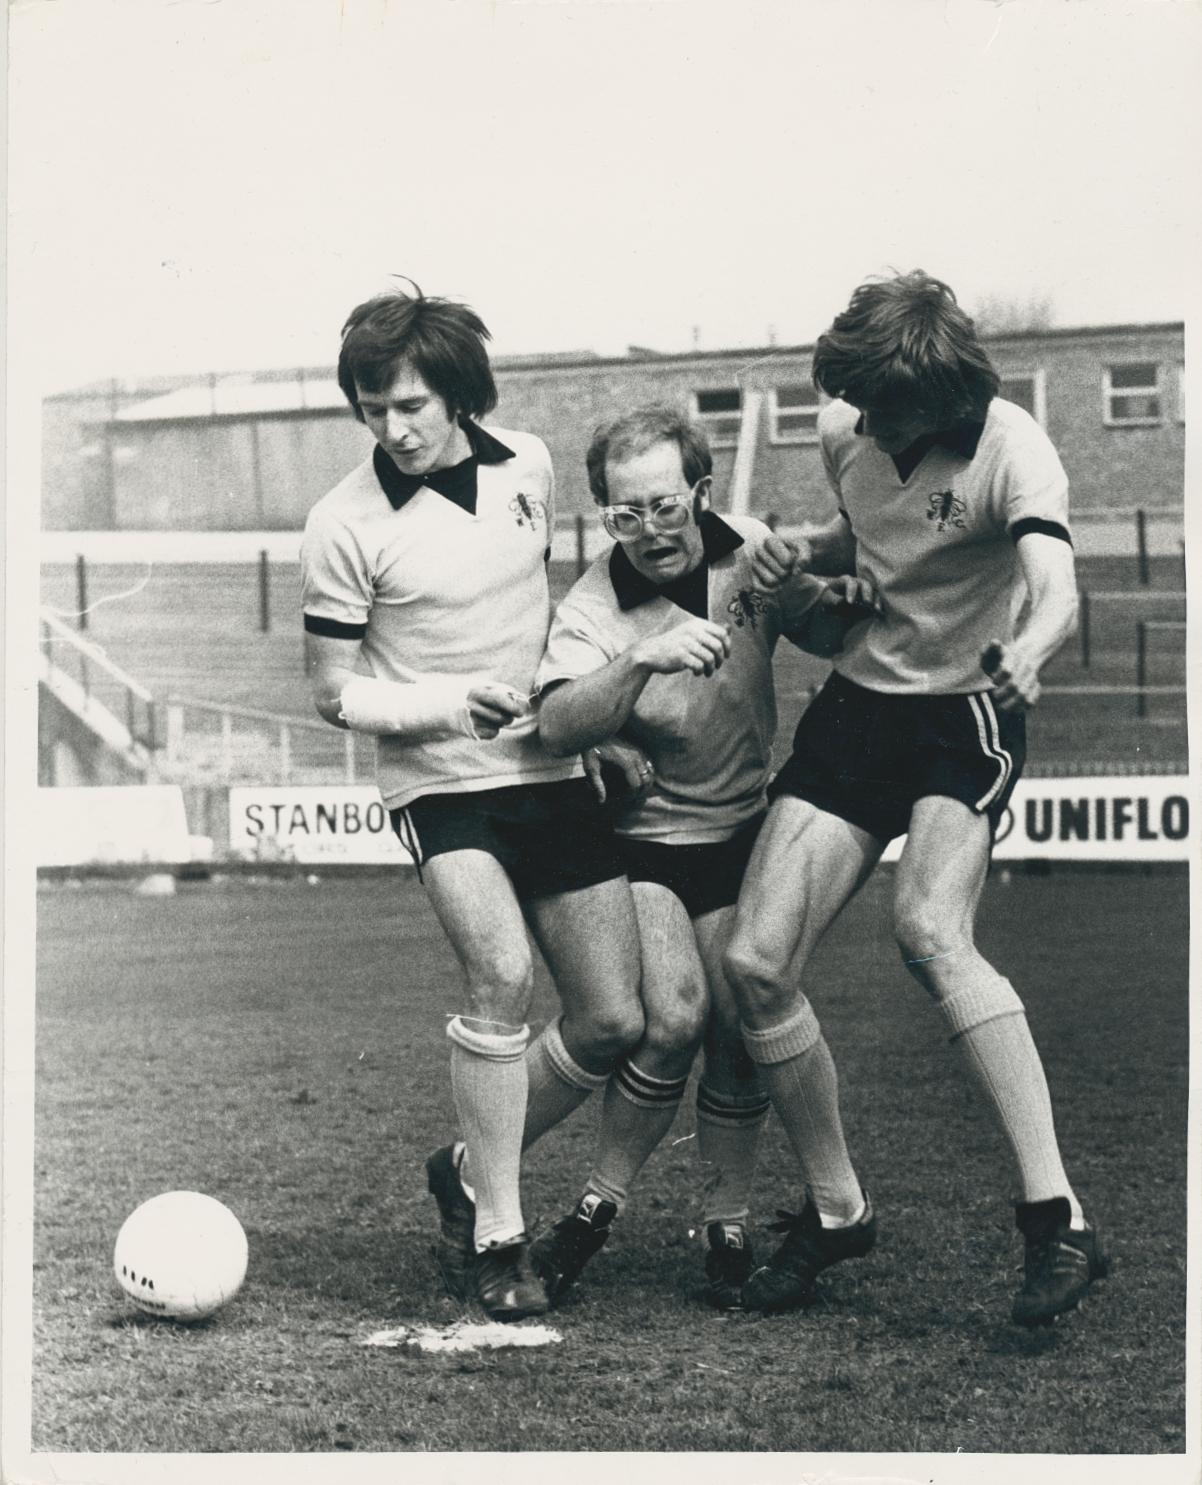 Tim Graham Black and White Photograph – Elton John bei einem Fußballspiel in Watford FC Shirts, 1973